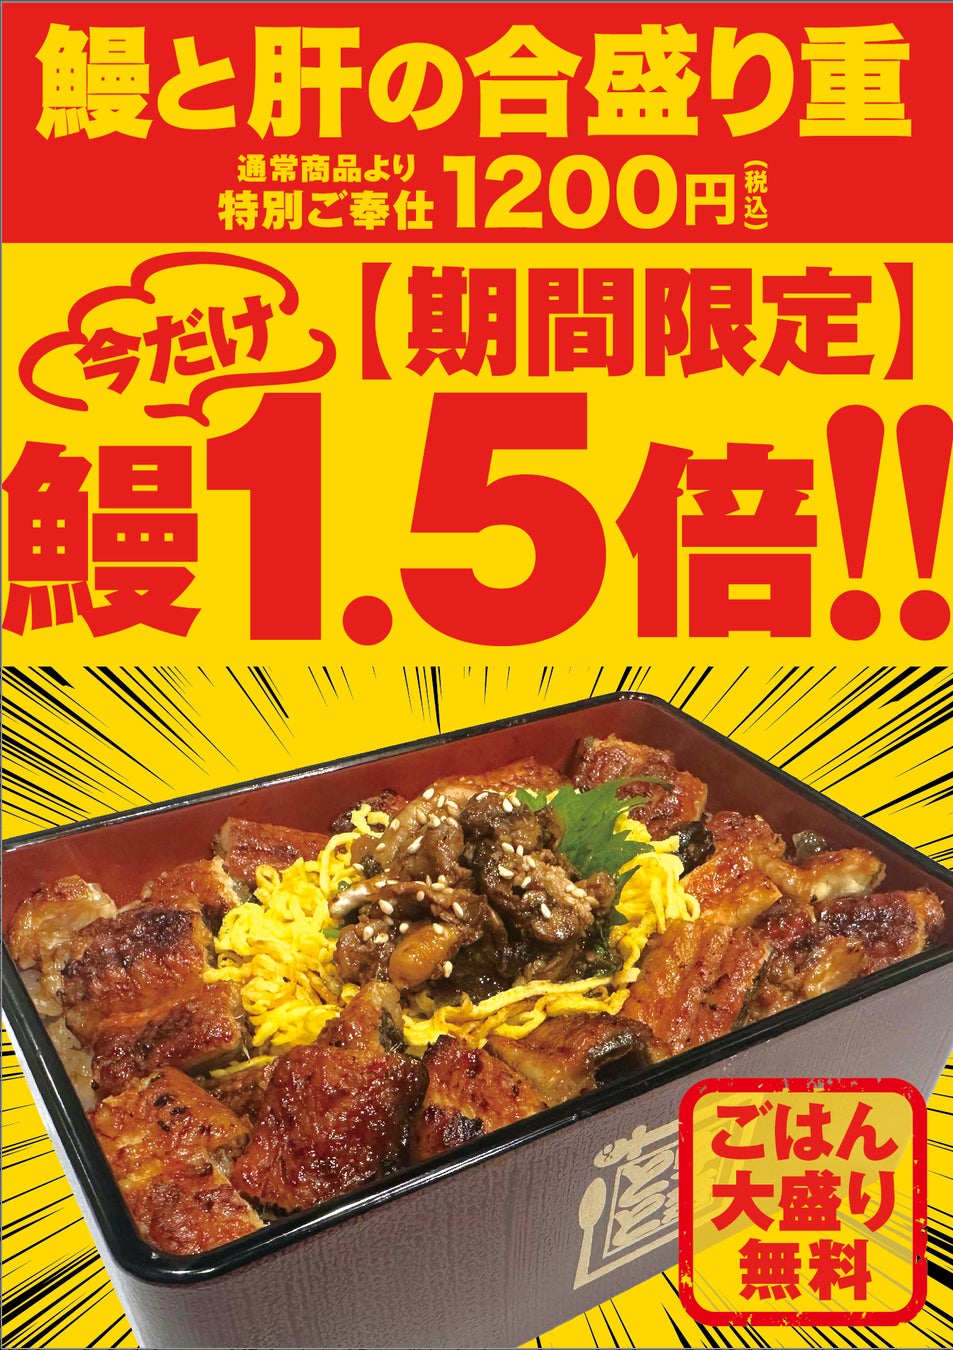 かるしお(R)認定商品
「減塩まぜこみご飯の素 五目」を2024年3月1日に新発売